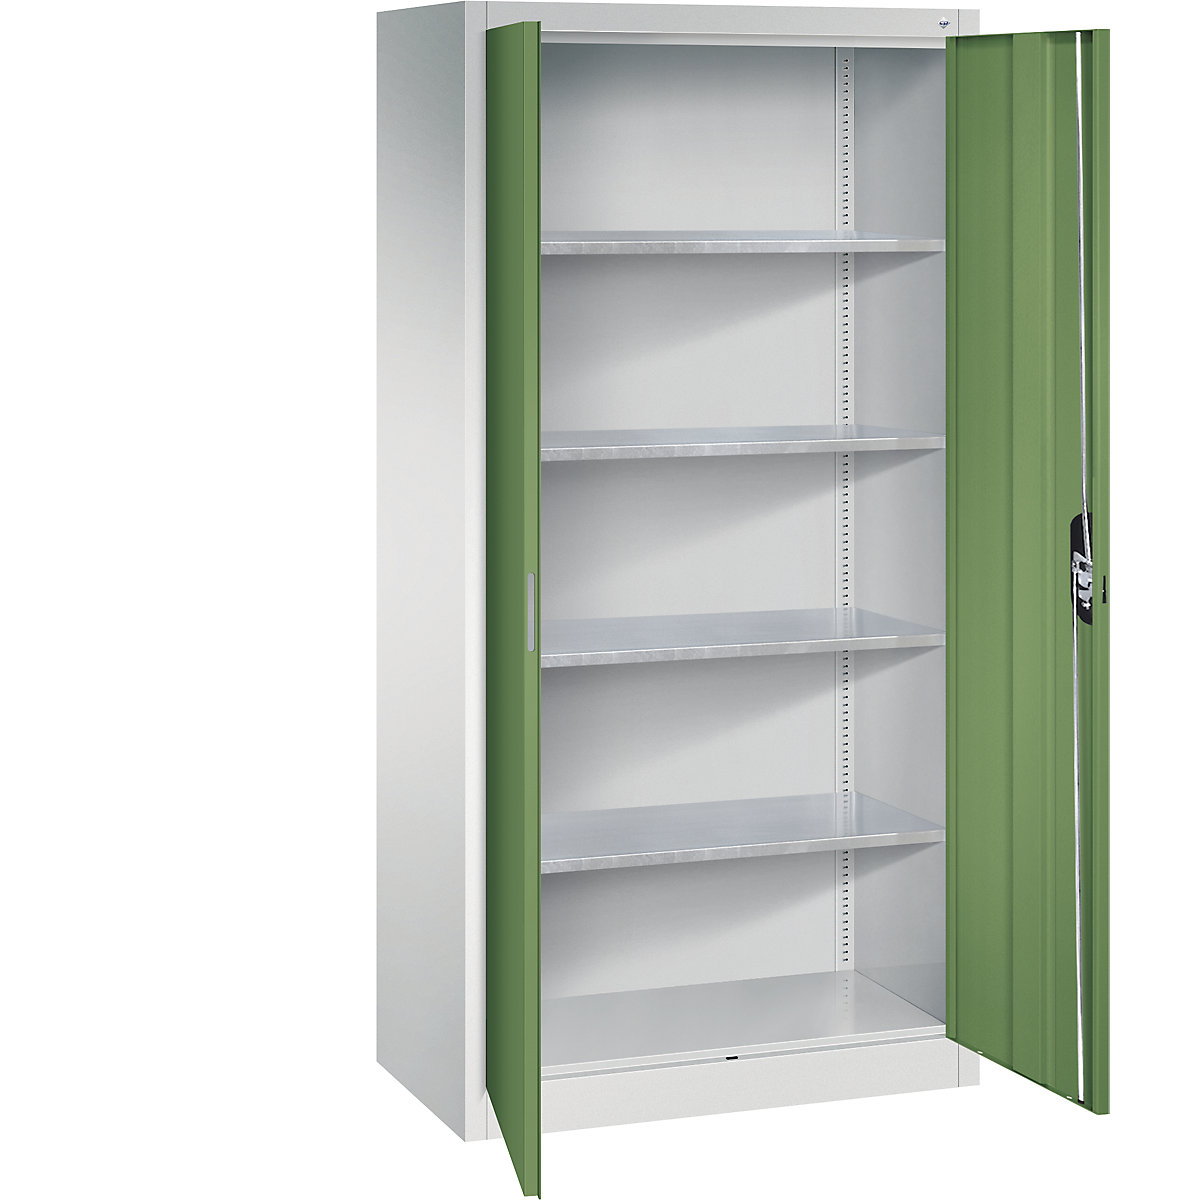 Workshop double door cupboard – C+P, HxWxD 1950 x 930 x 500 mm, light grey / reseda green-13